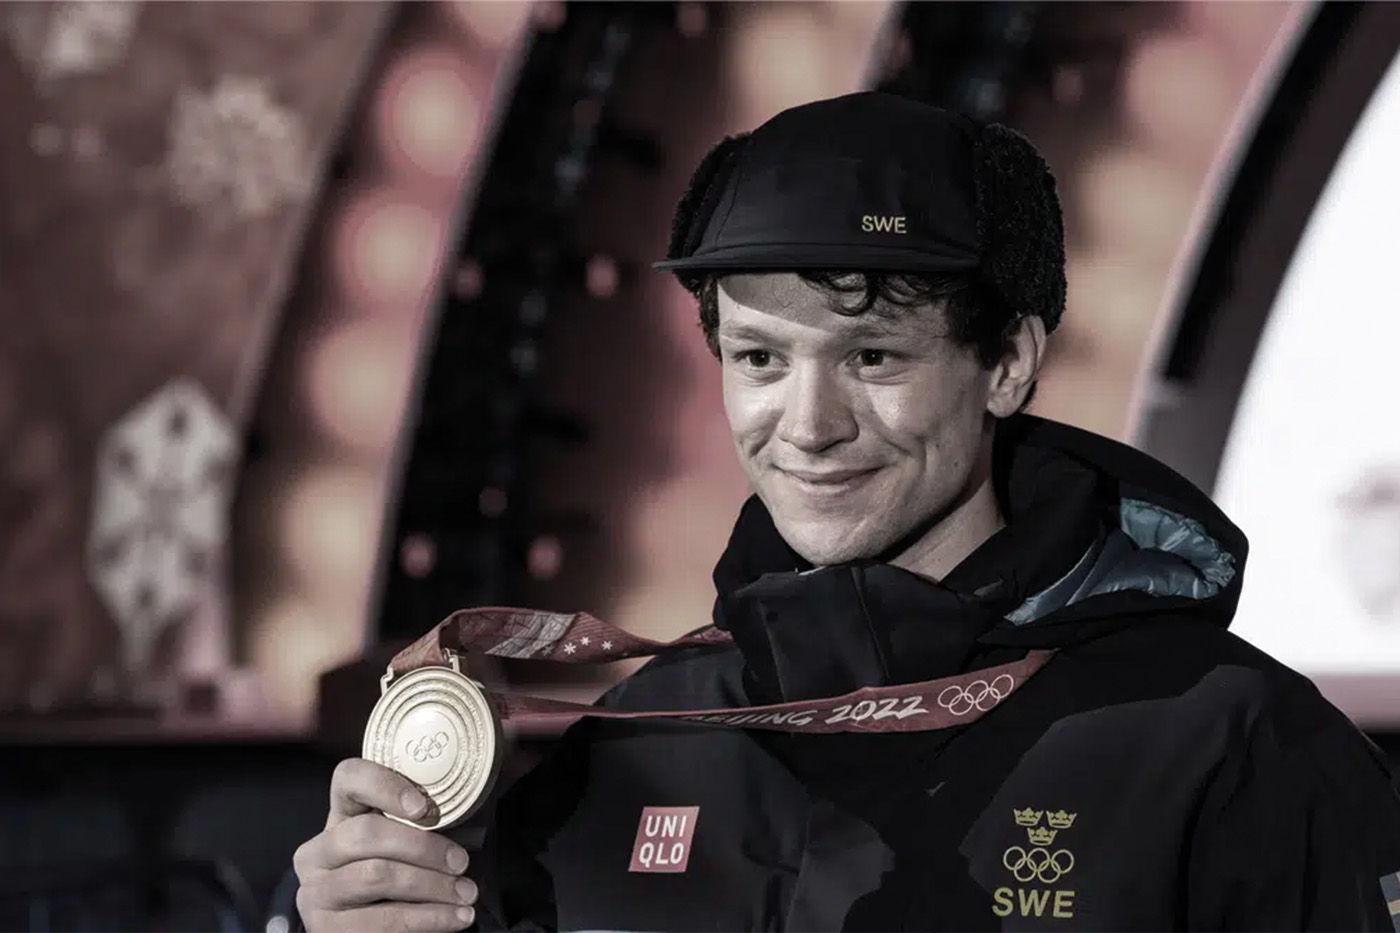 Nils van der Poel är OS-guldmedaljör och grundare av sports & relations